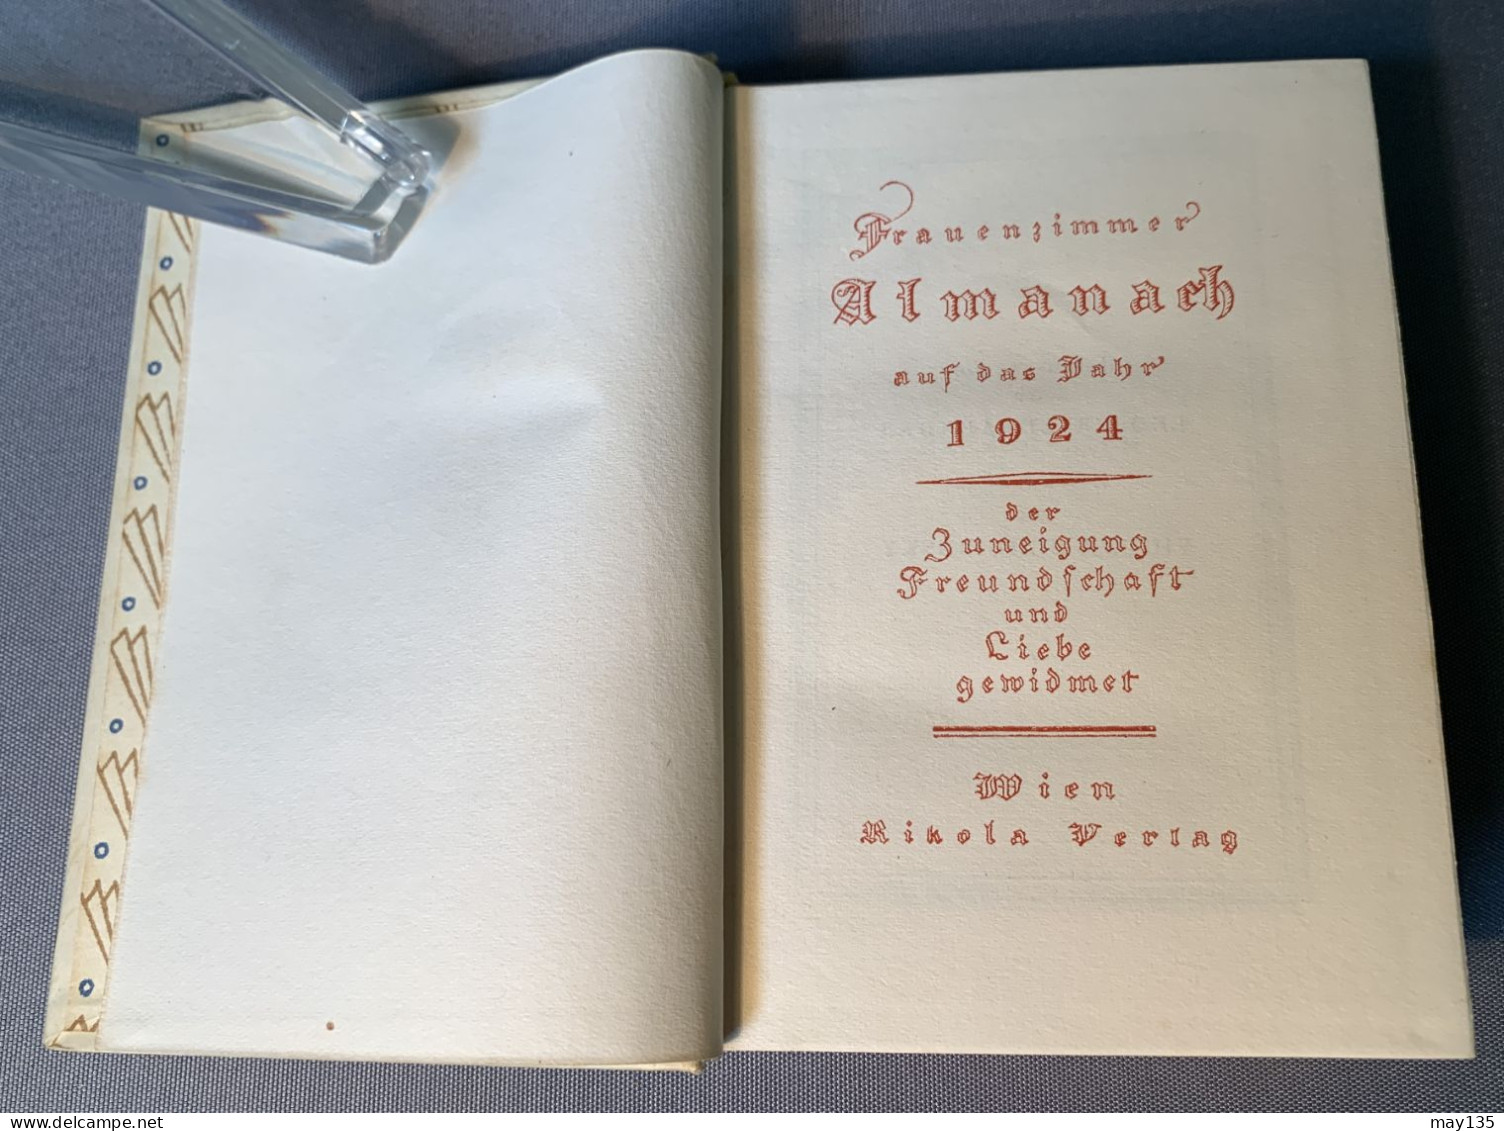 Anno 1924 - Frauenzimmer Almanach Auf  Das Jahr 1924 - Wien / Rikola Verlag - Calendriers